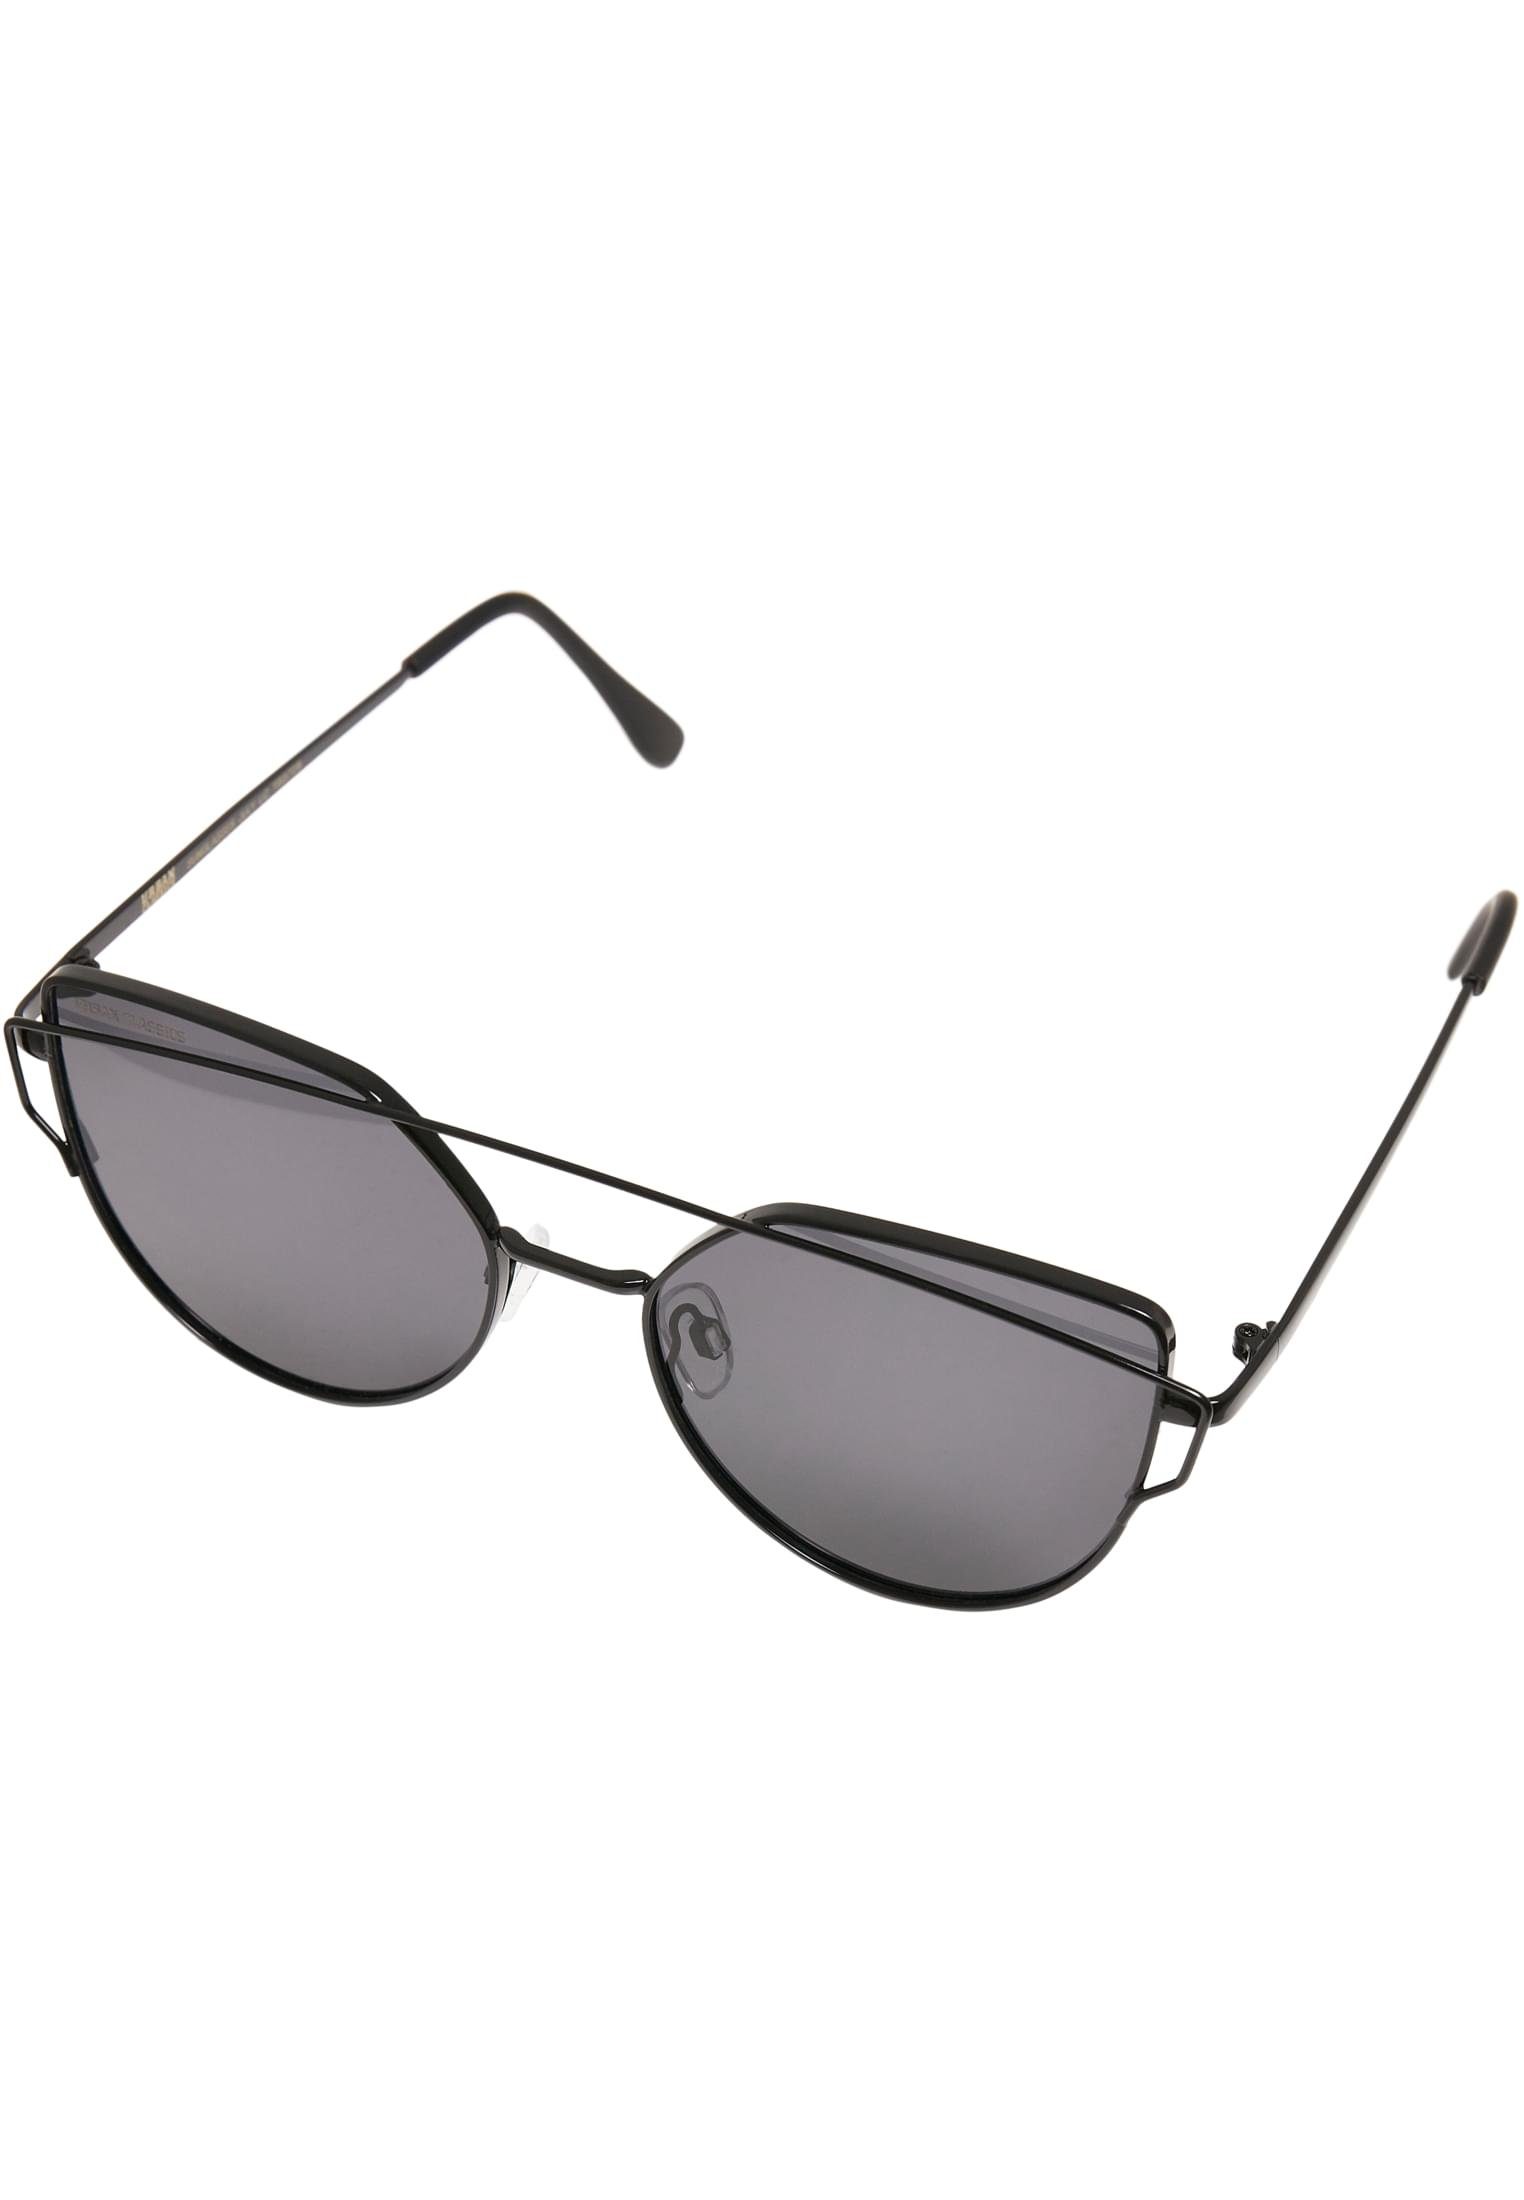 Sunglasses UC July CLASSICS URBAN Sonnenbrille Accessoires black